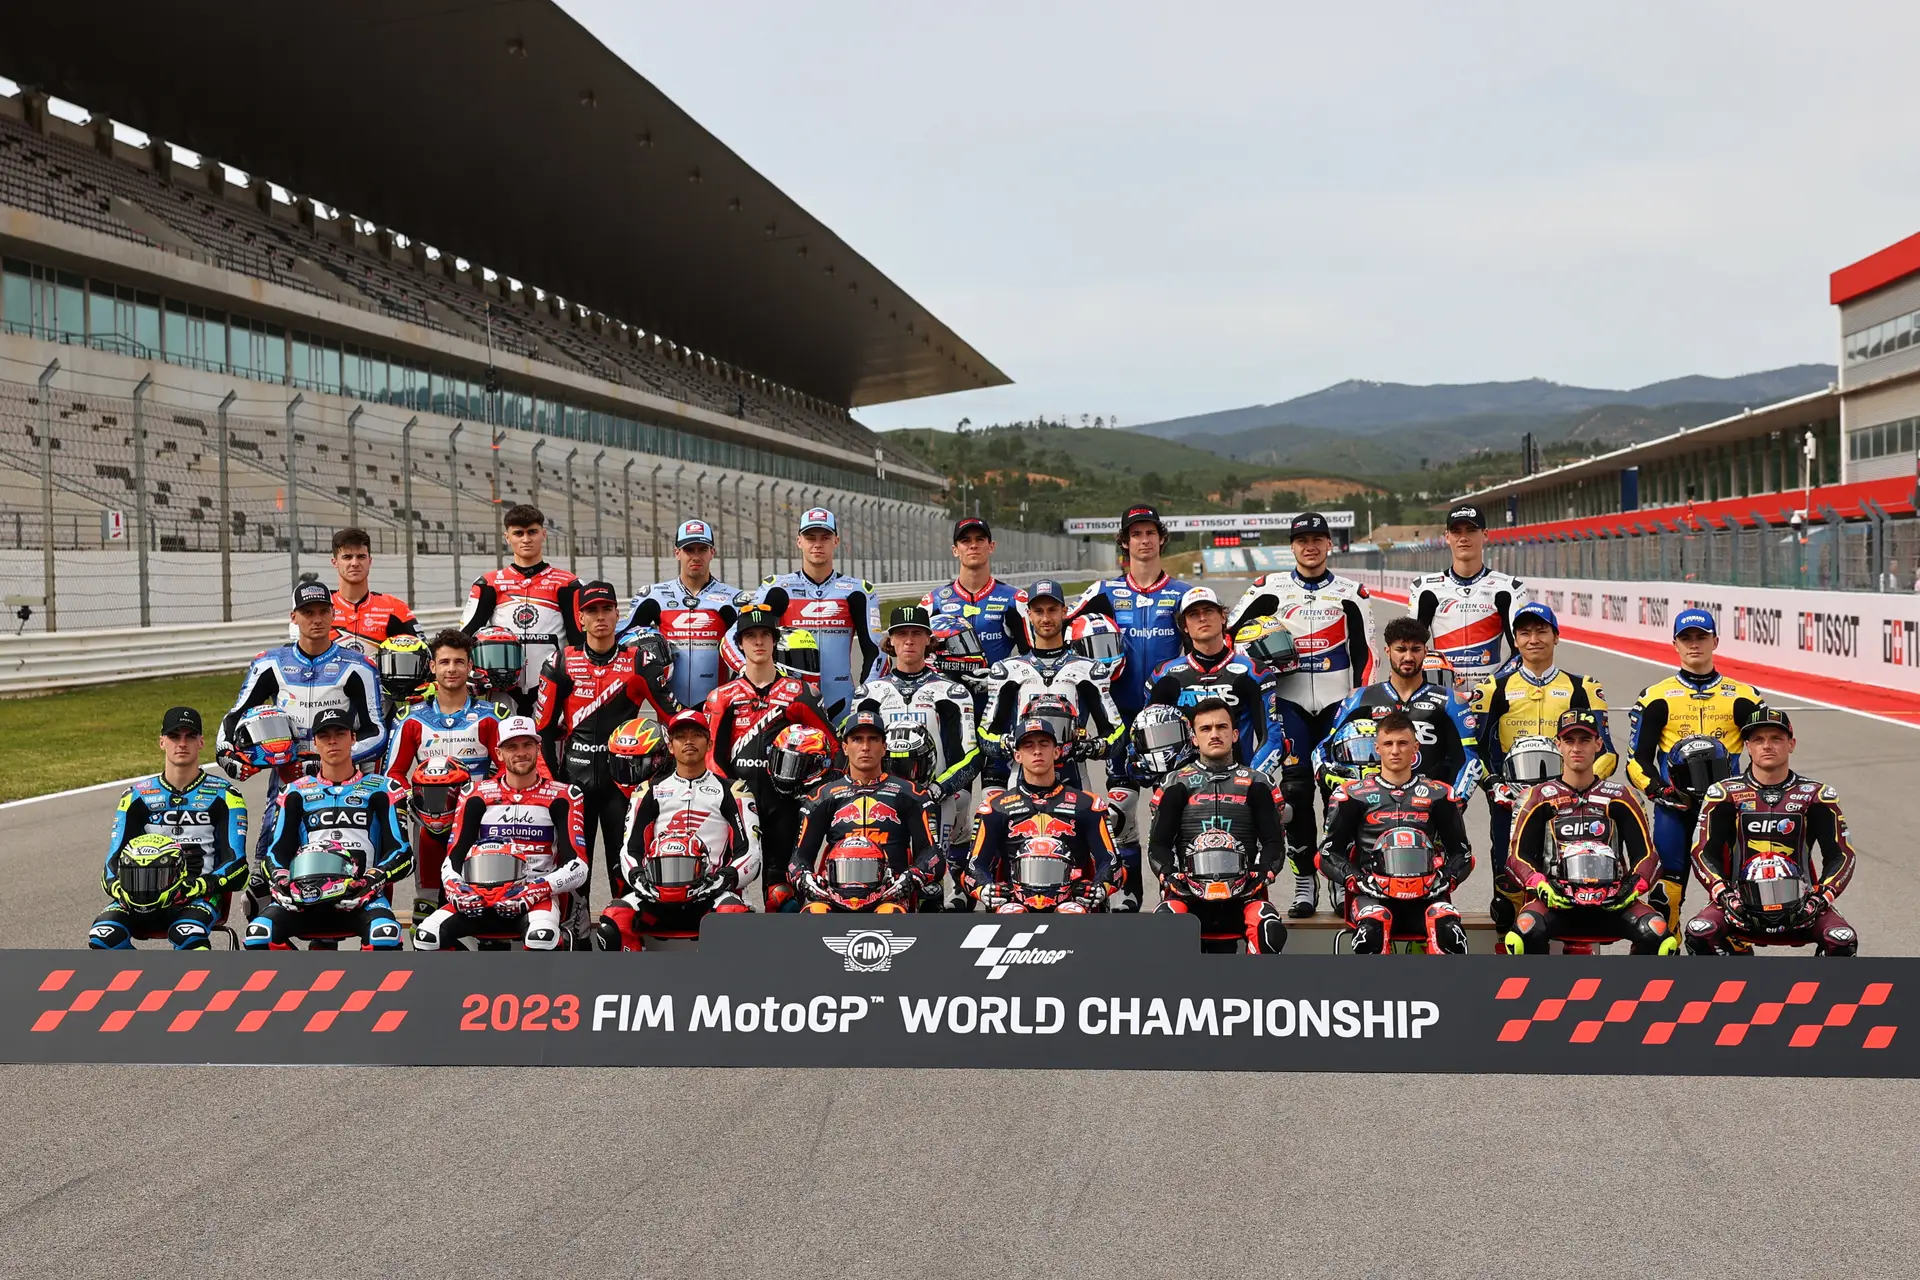 Moto GP: arrancam os treinos livres no Autódromo Internacional do